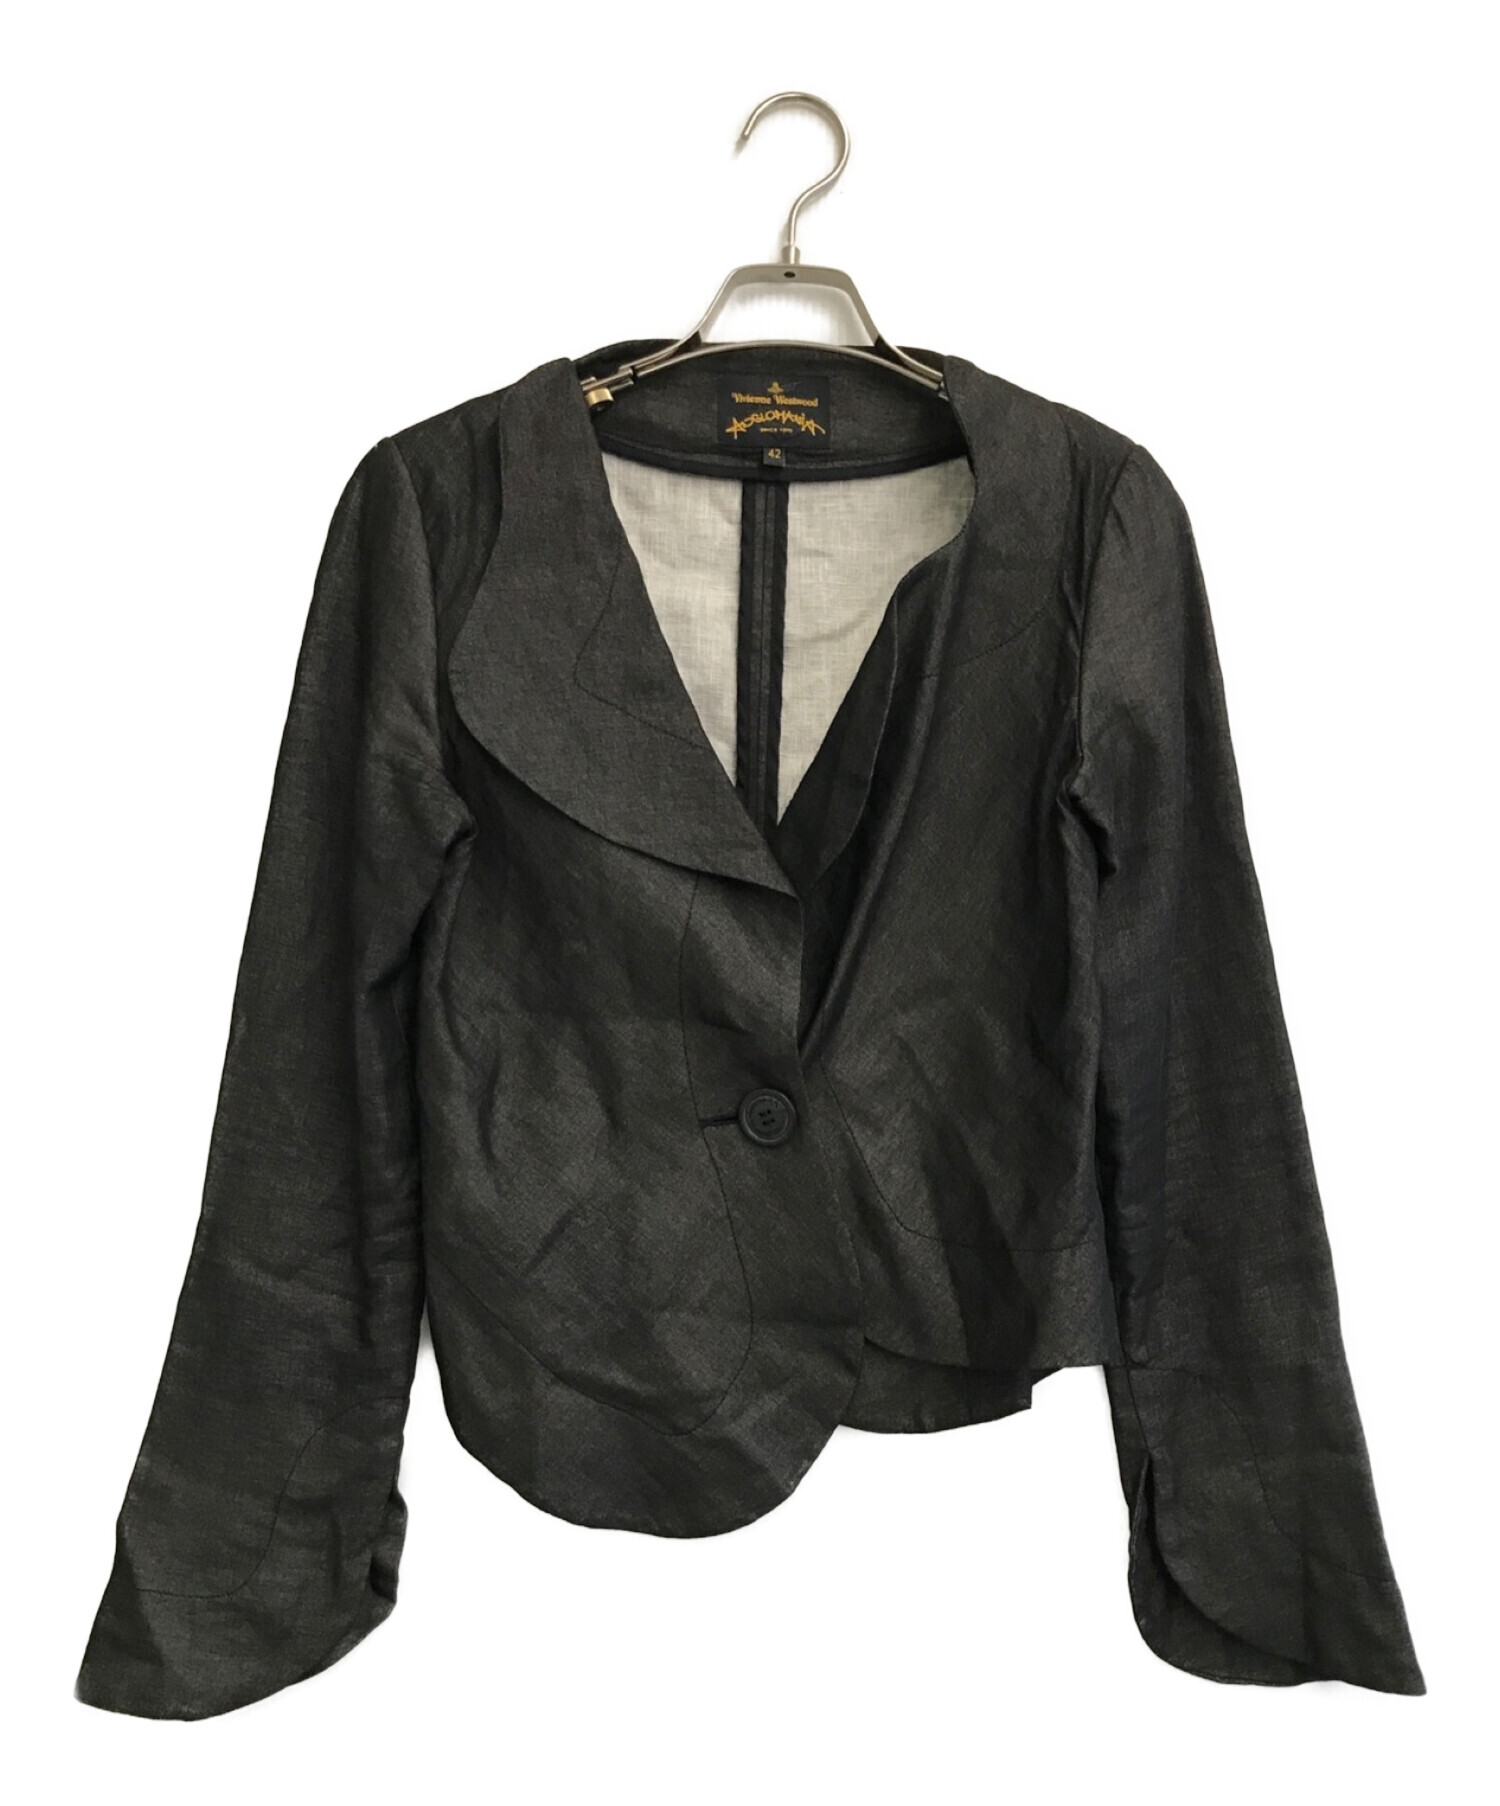 Vivienne Westwood ANGLOMANIA (ヴィヴィアンウエストウッド アングロマニア) リネン混ジャケット ブラック サイズ:42